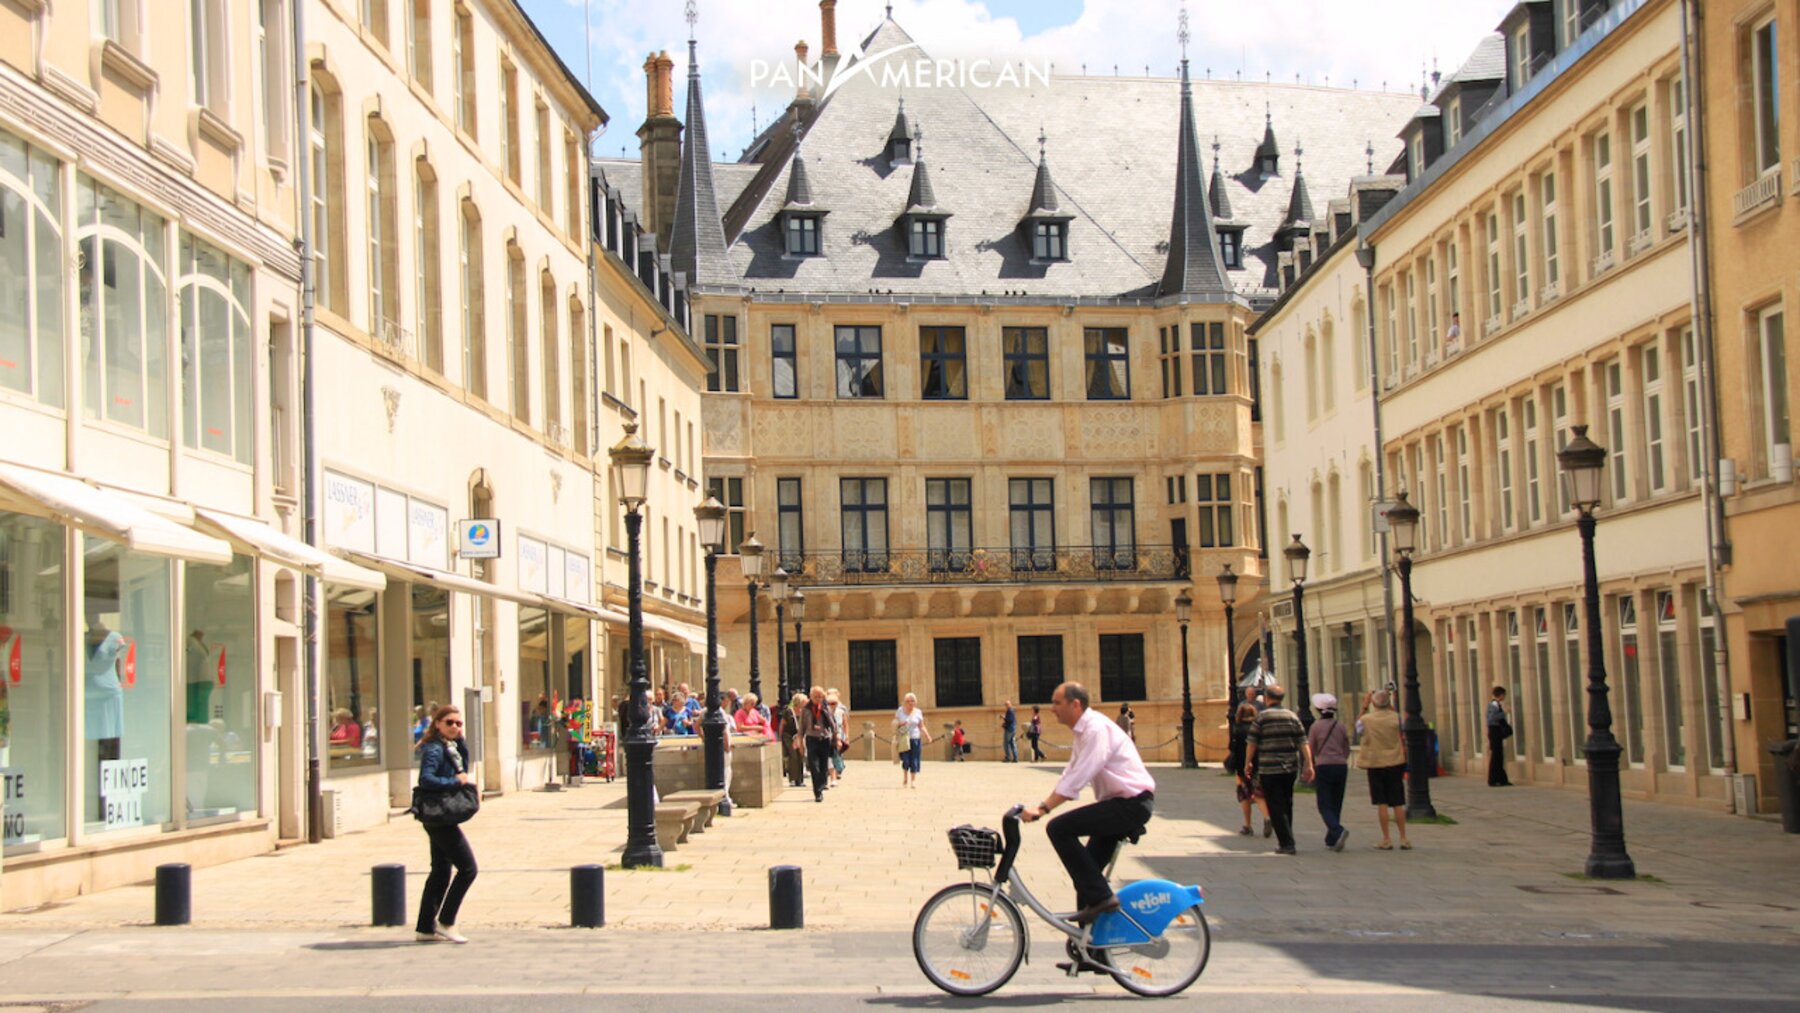 Luxembourg - Quốc gia giàu có và tự do